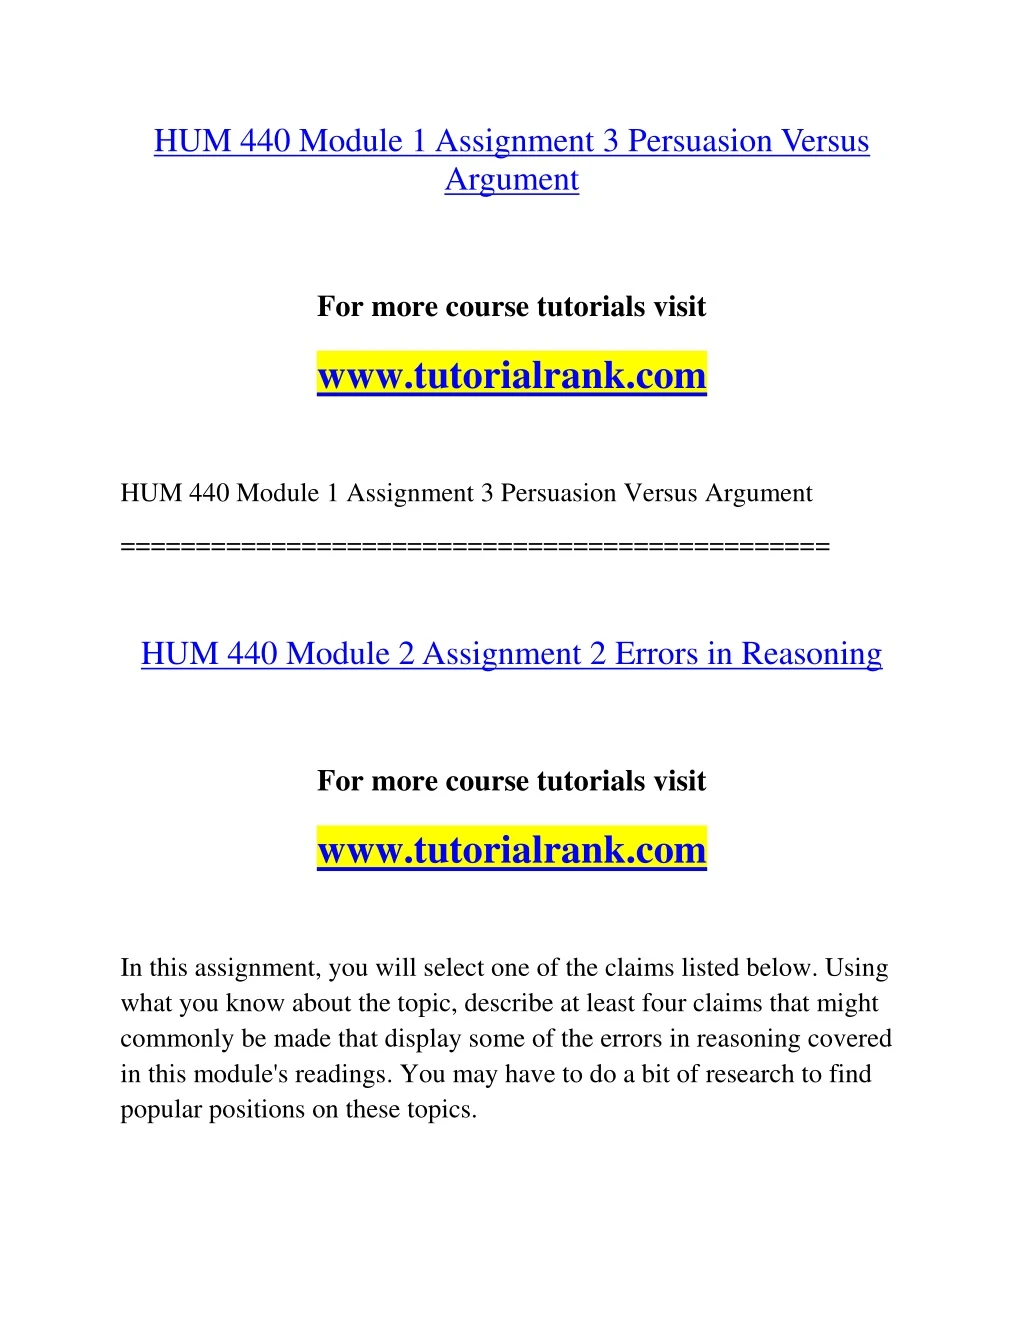 hum 440 module 1 assignment 3 persuasion versus